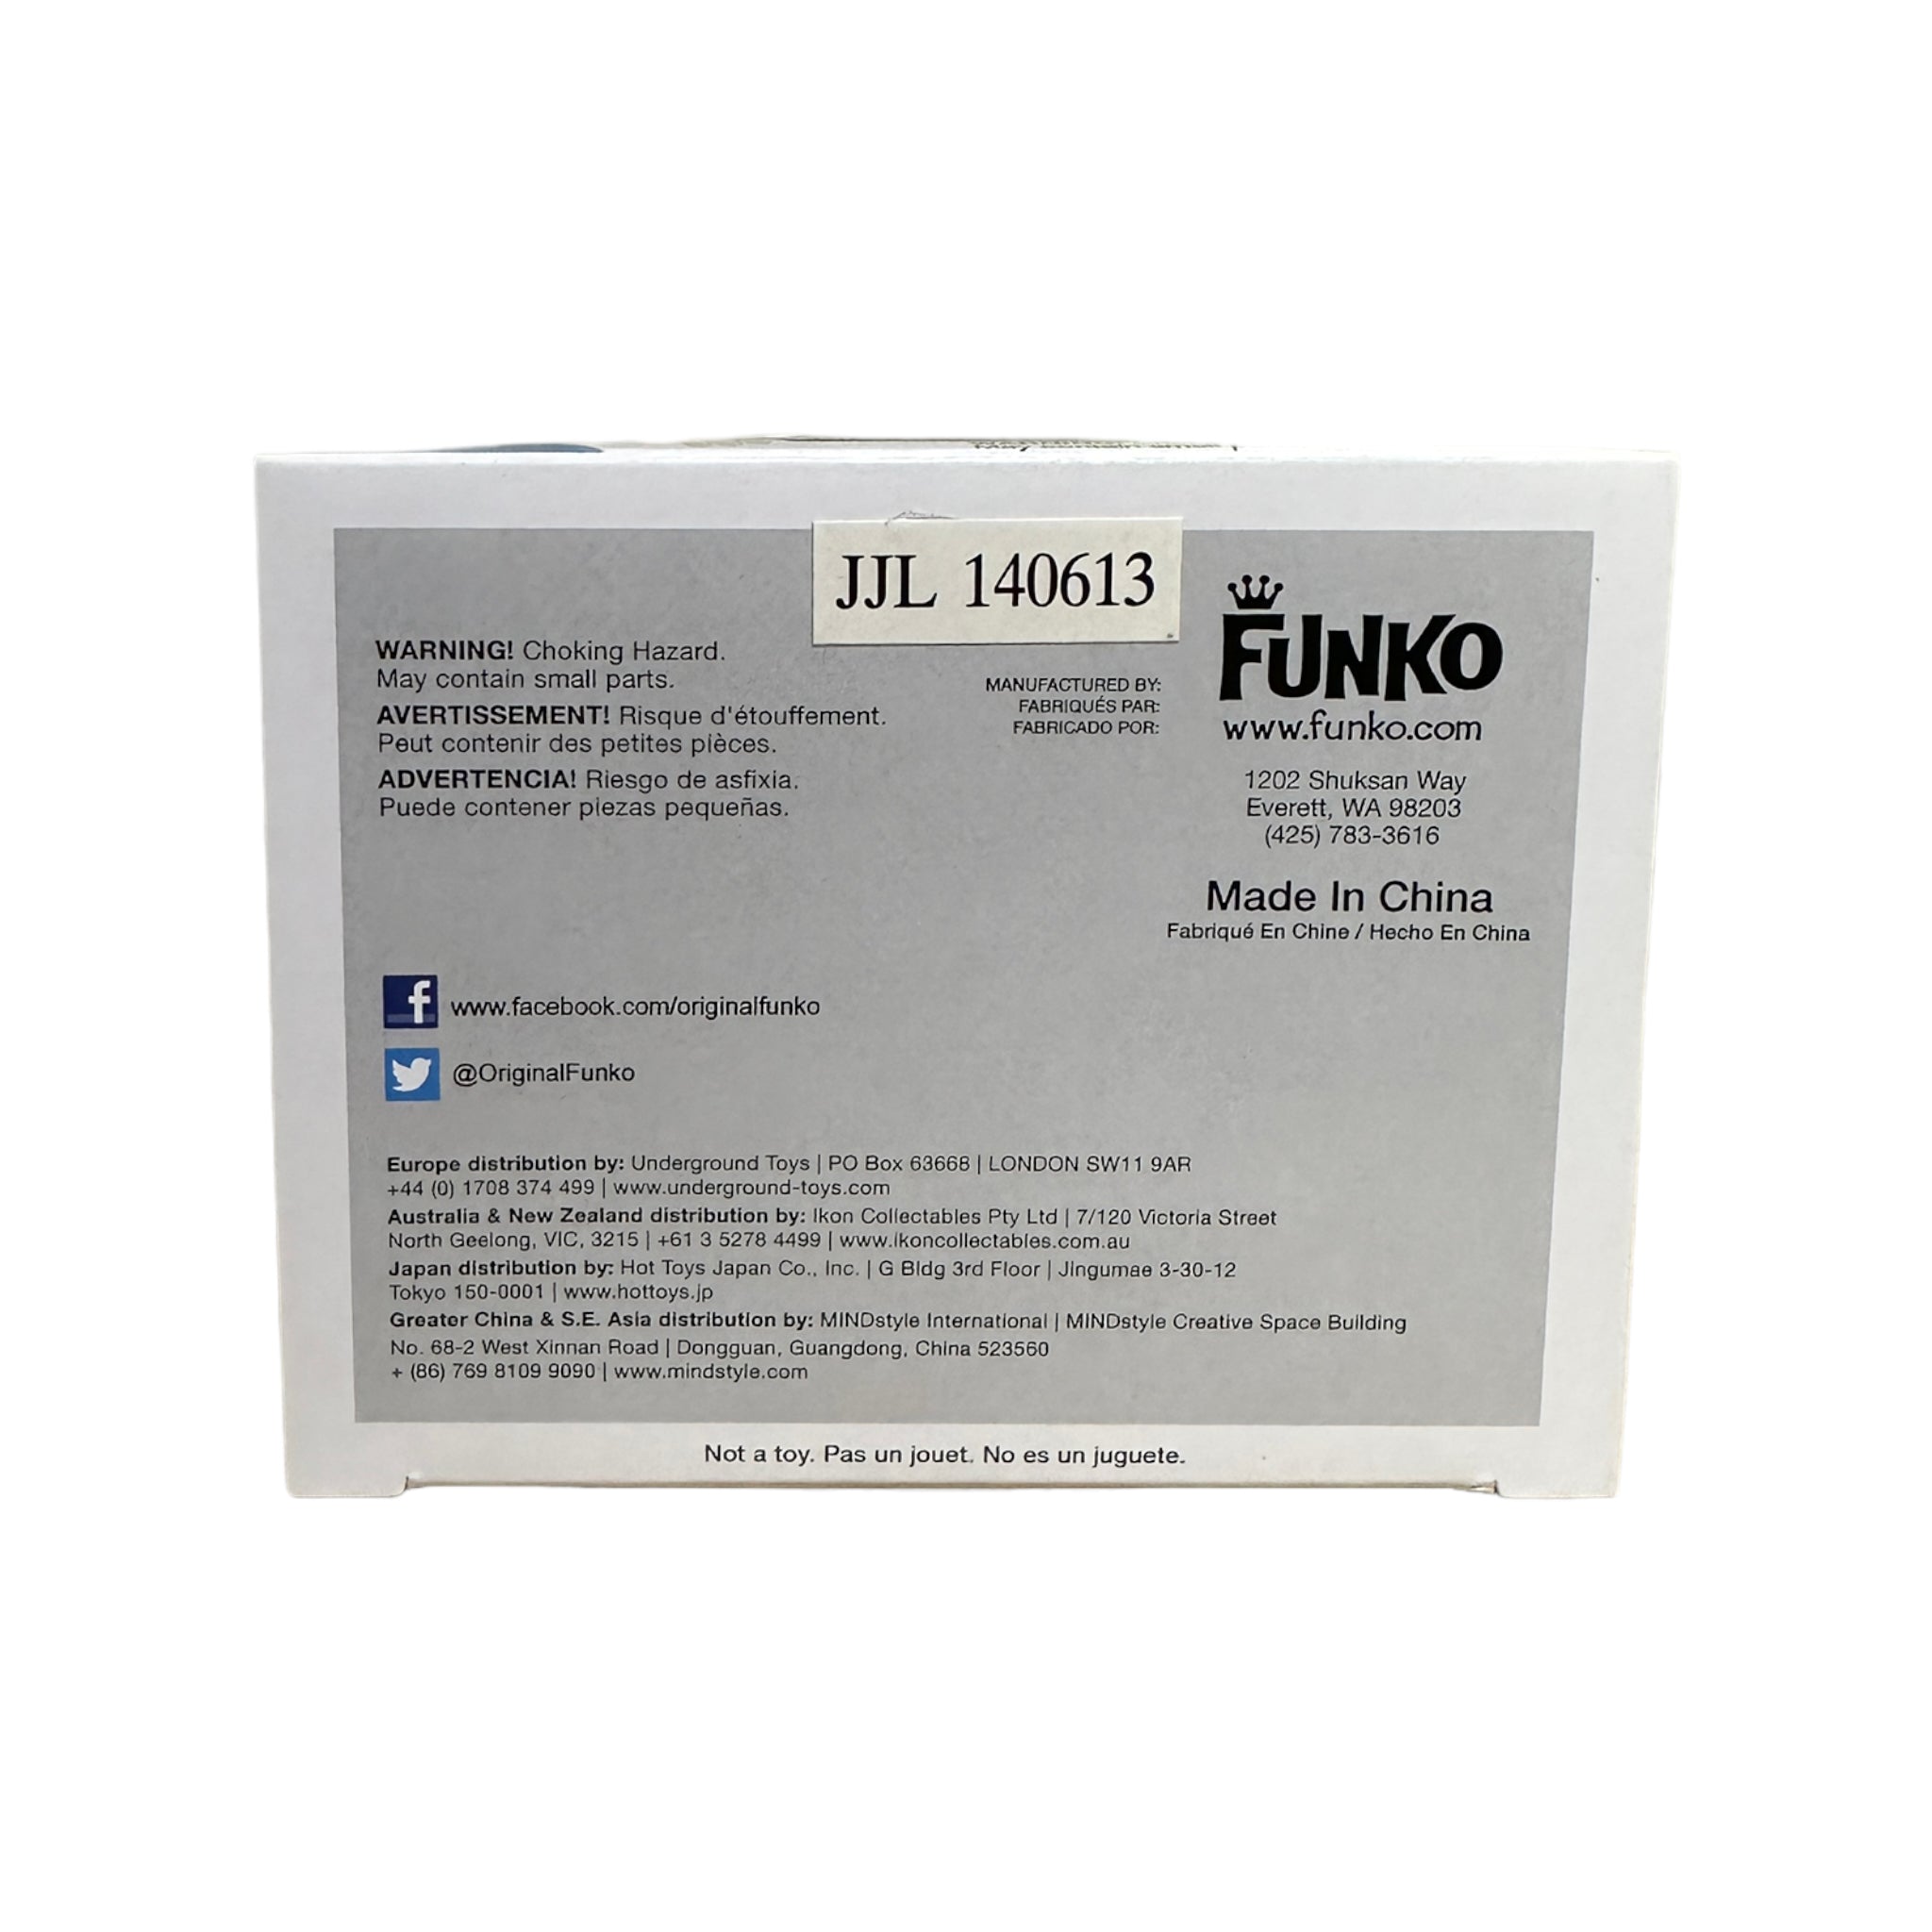 Freddy Funko Clear #32 Funko Pop! - SDCC 2014 Exclusive LE96 Pcs - Condition 7/10